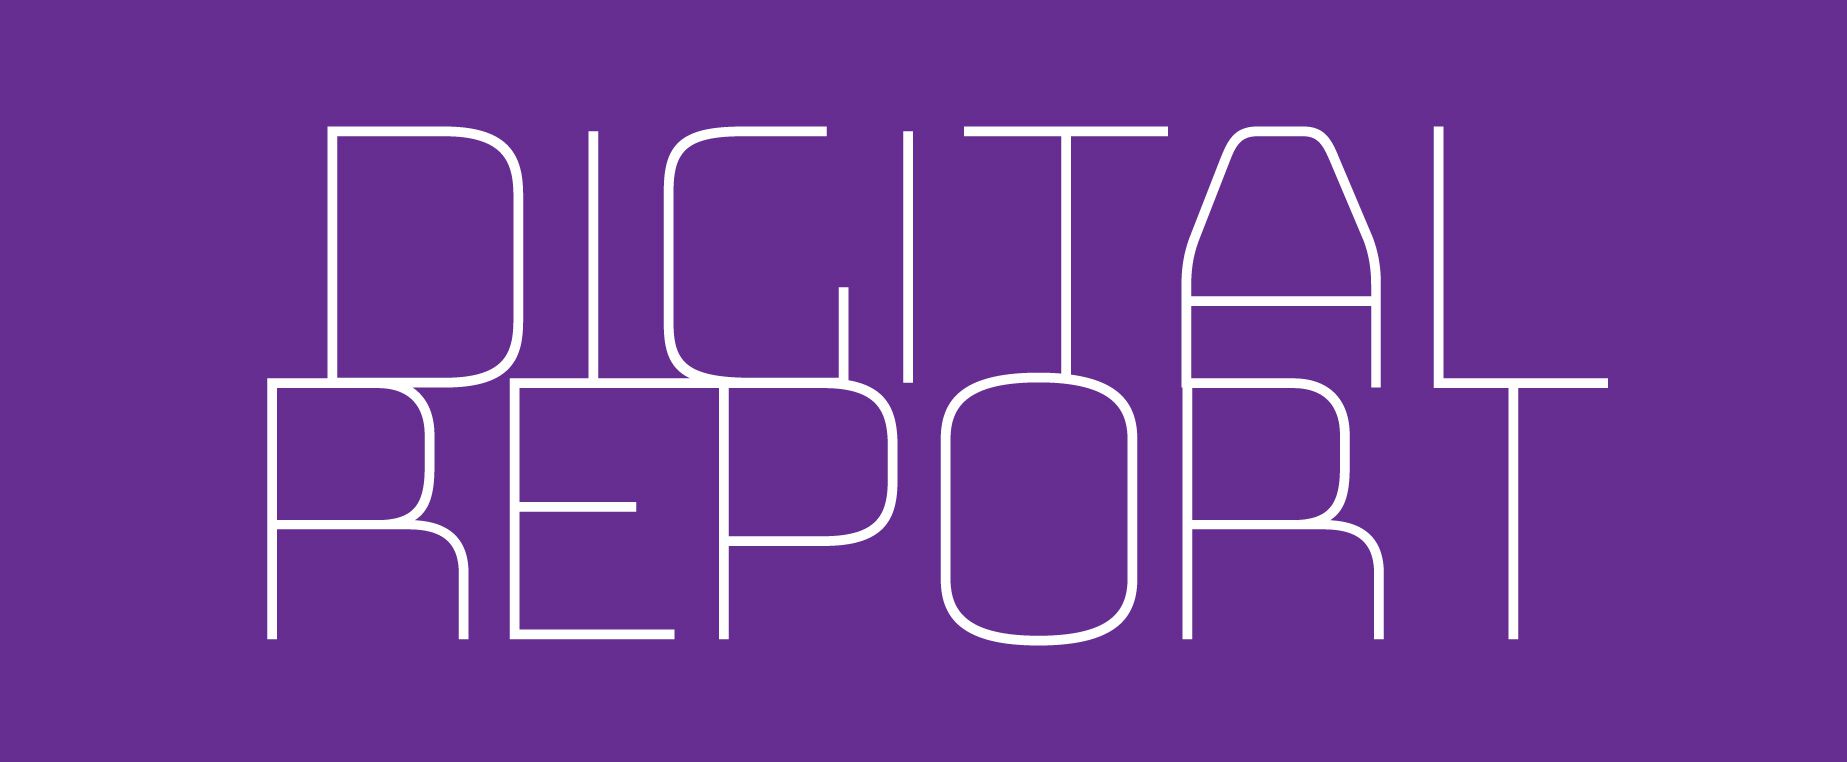 Digital Report